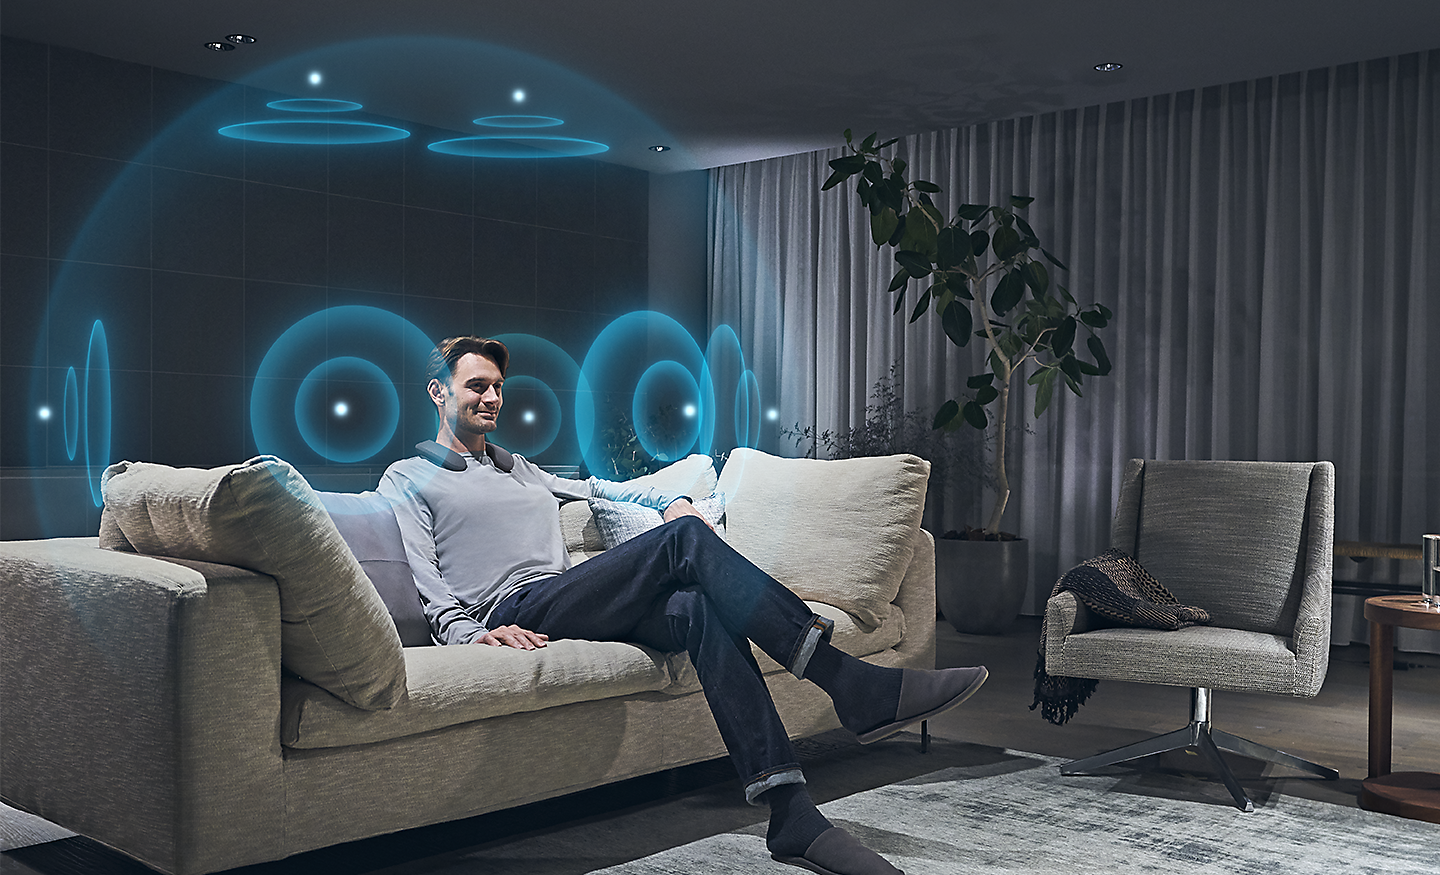 Bilde av en mann i en stue med illustrerte blå lydbølger som representerer 360 Spatial Sound